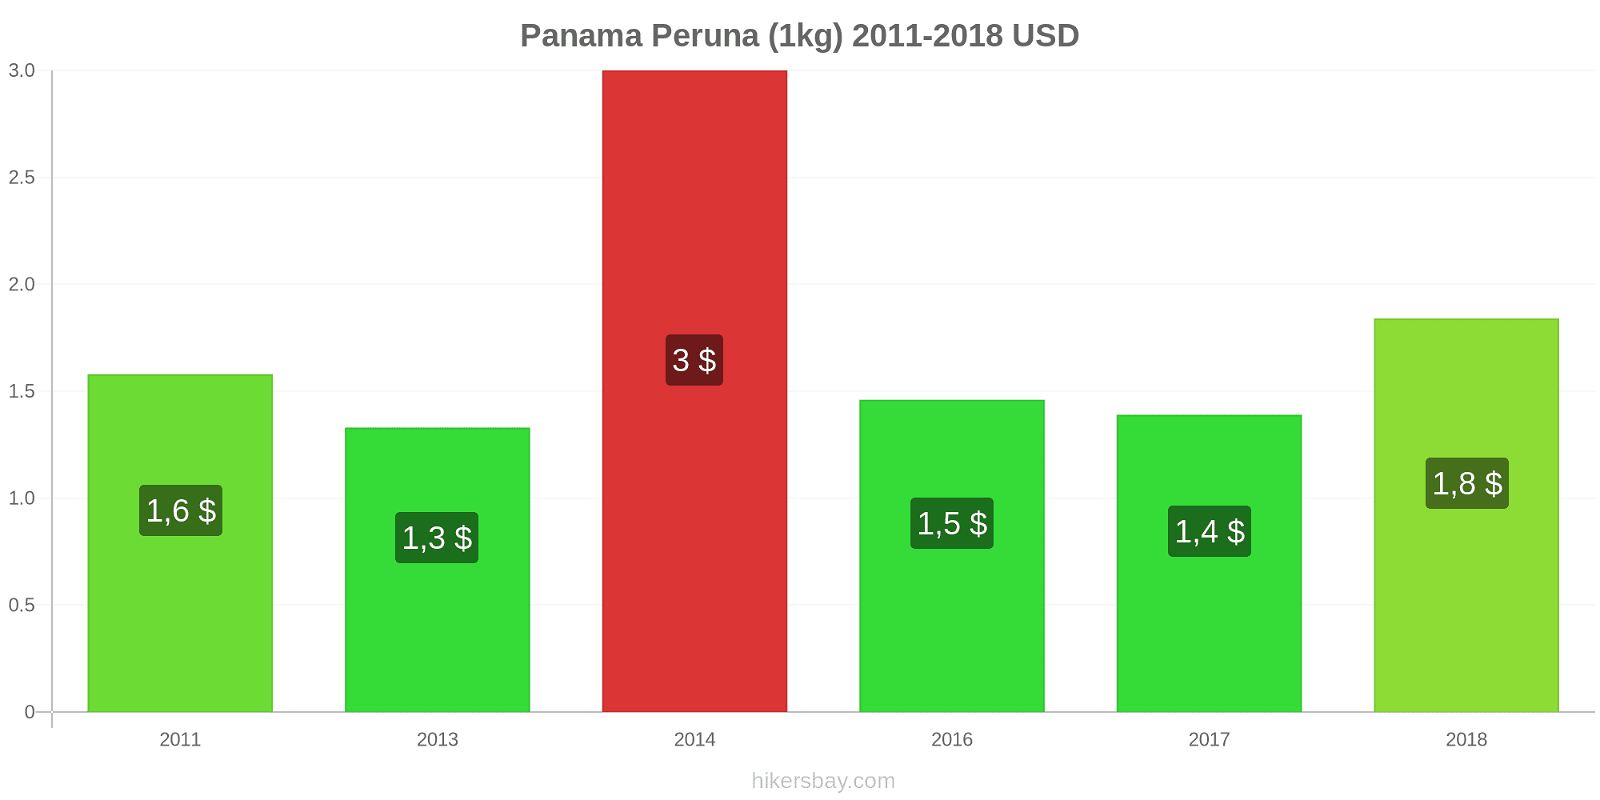 Panama hintojen muutokset Peruna (1kg) hikersbay.com